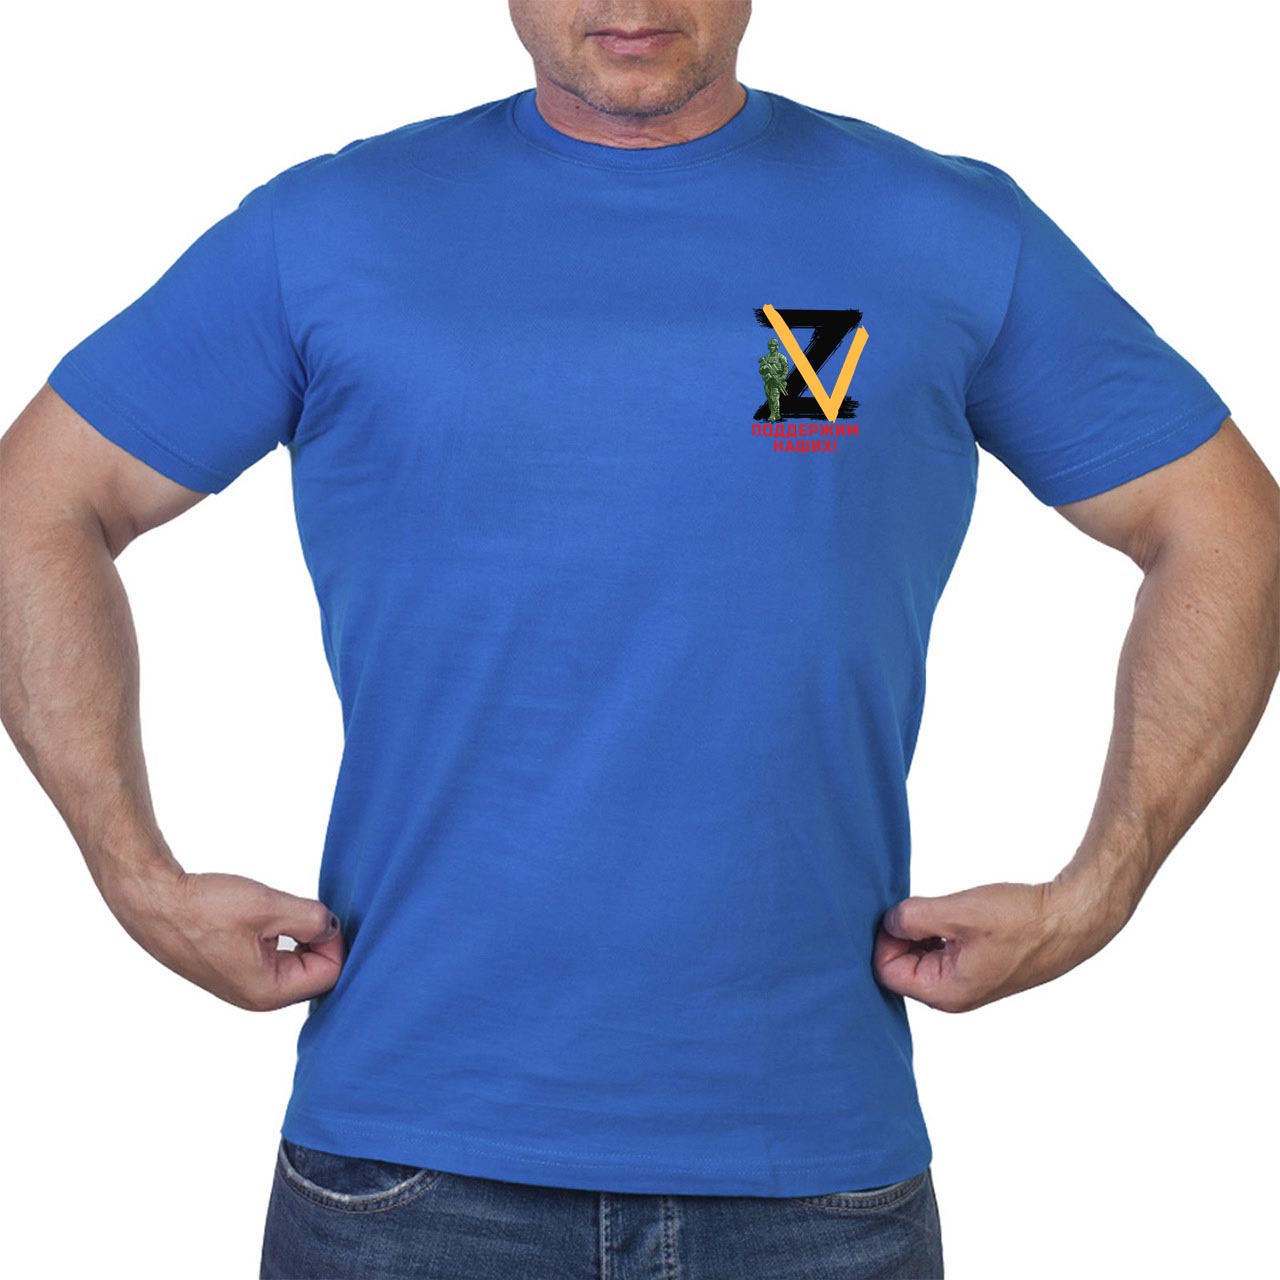 Купить в интернет магазине футболку с аббревиатурой Z V